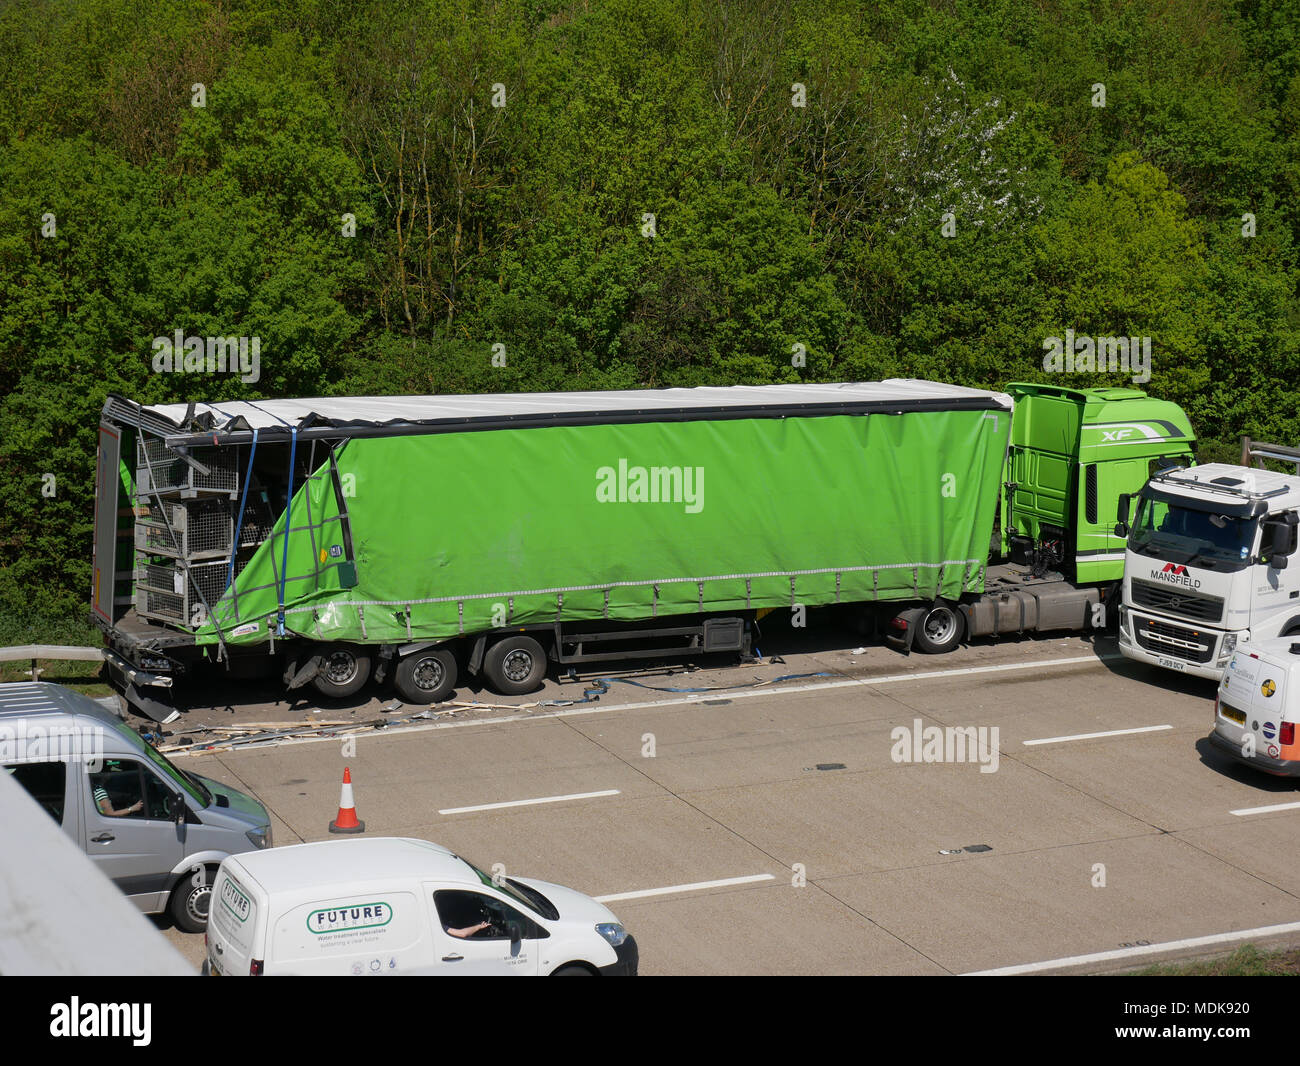 M20 J8-9 Coastbound, Kent, Regno Unito. Il 20 aprile, 2018. Due HGV è coinvolto in un traffico su strada la collisione sul M20 nel Kent Credit: Volo fotografia- www.flybyphotography.co.uk/Alamy Live News Foto Stock